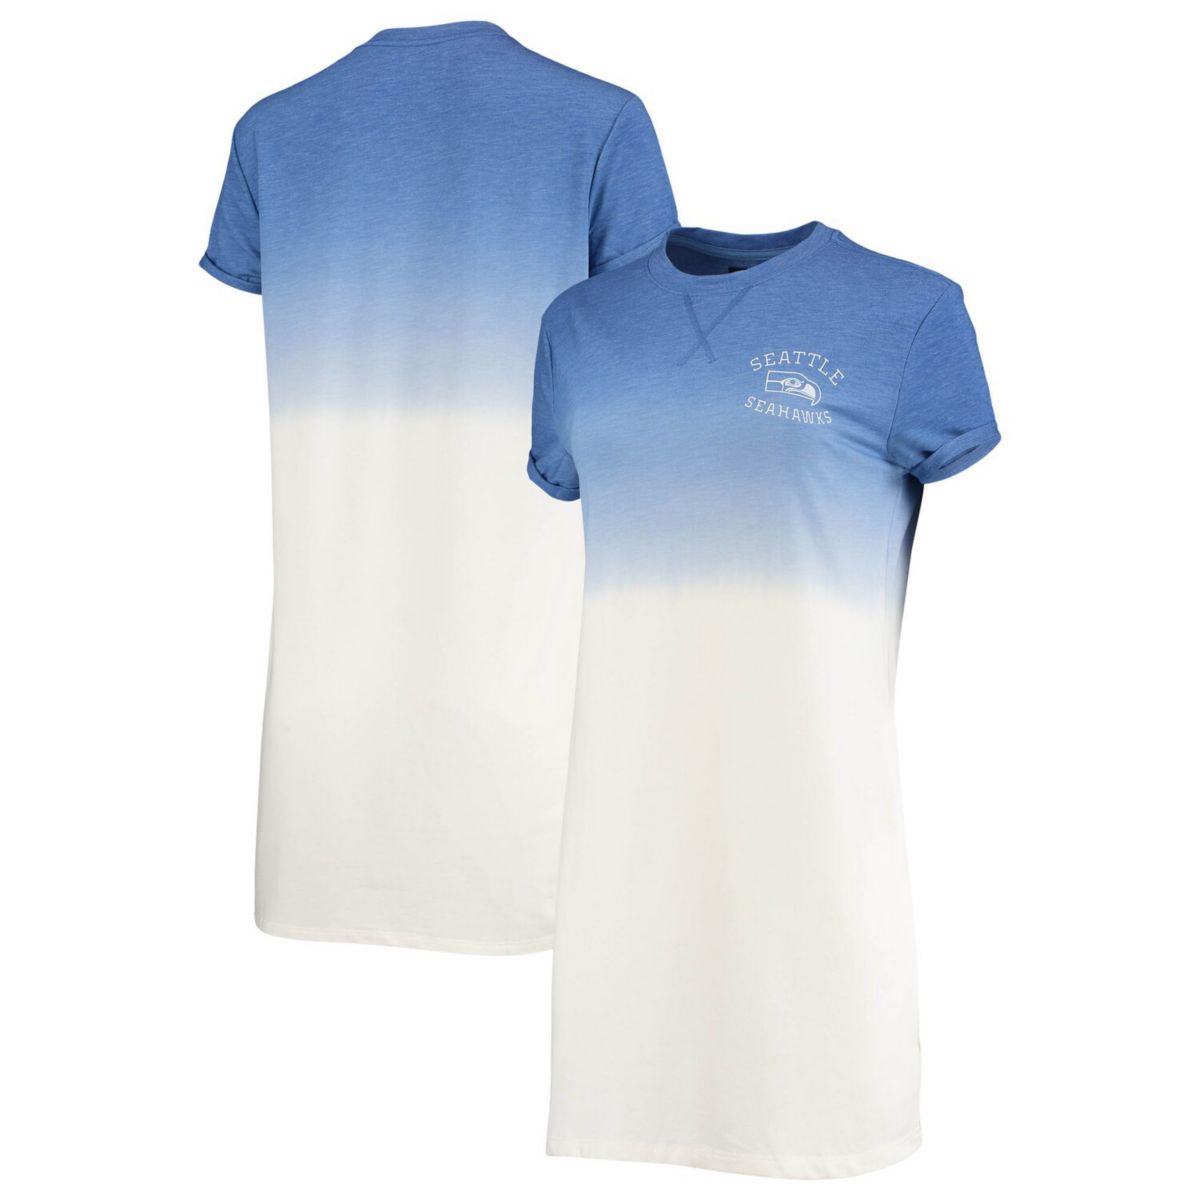 Женское платье-футболка с меланжевым принтом цвета королевского/белого цвета Seattle Seahawks с эффектом омбре Tri-Blend Unbranded